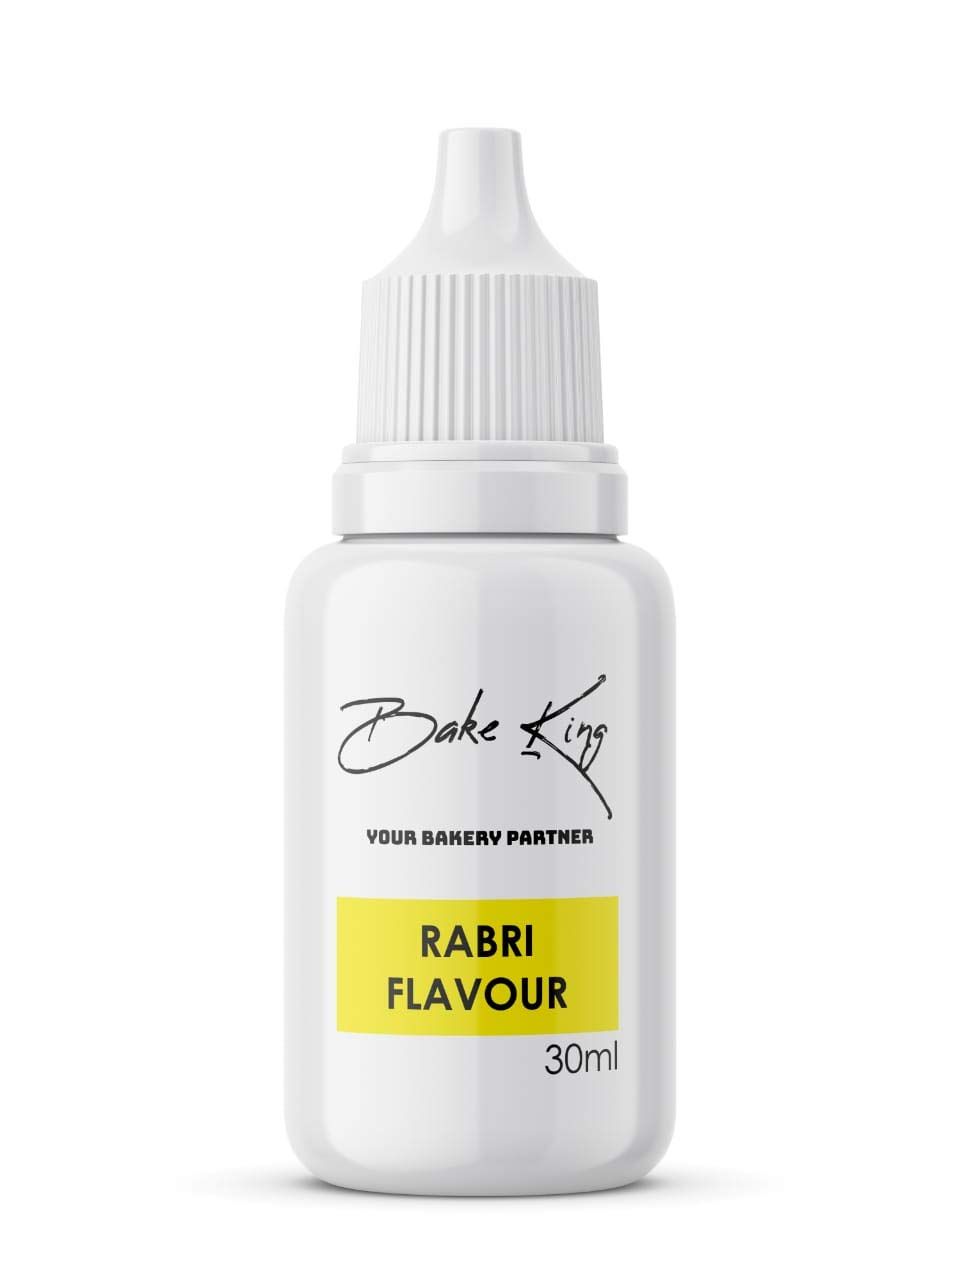 BAKE KING Rabri Flavour Image